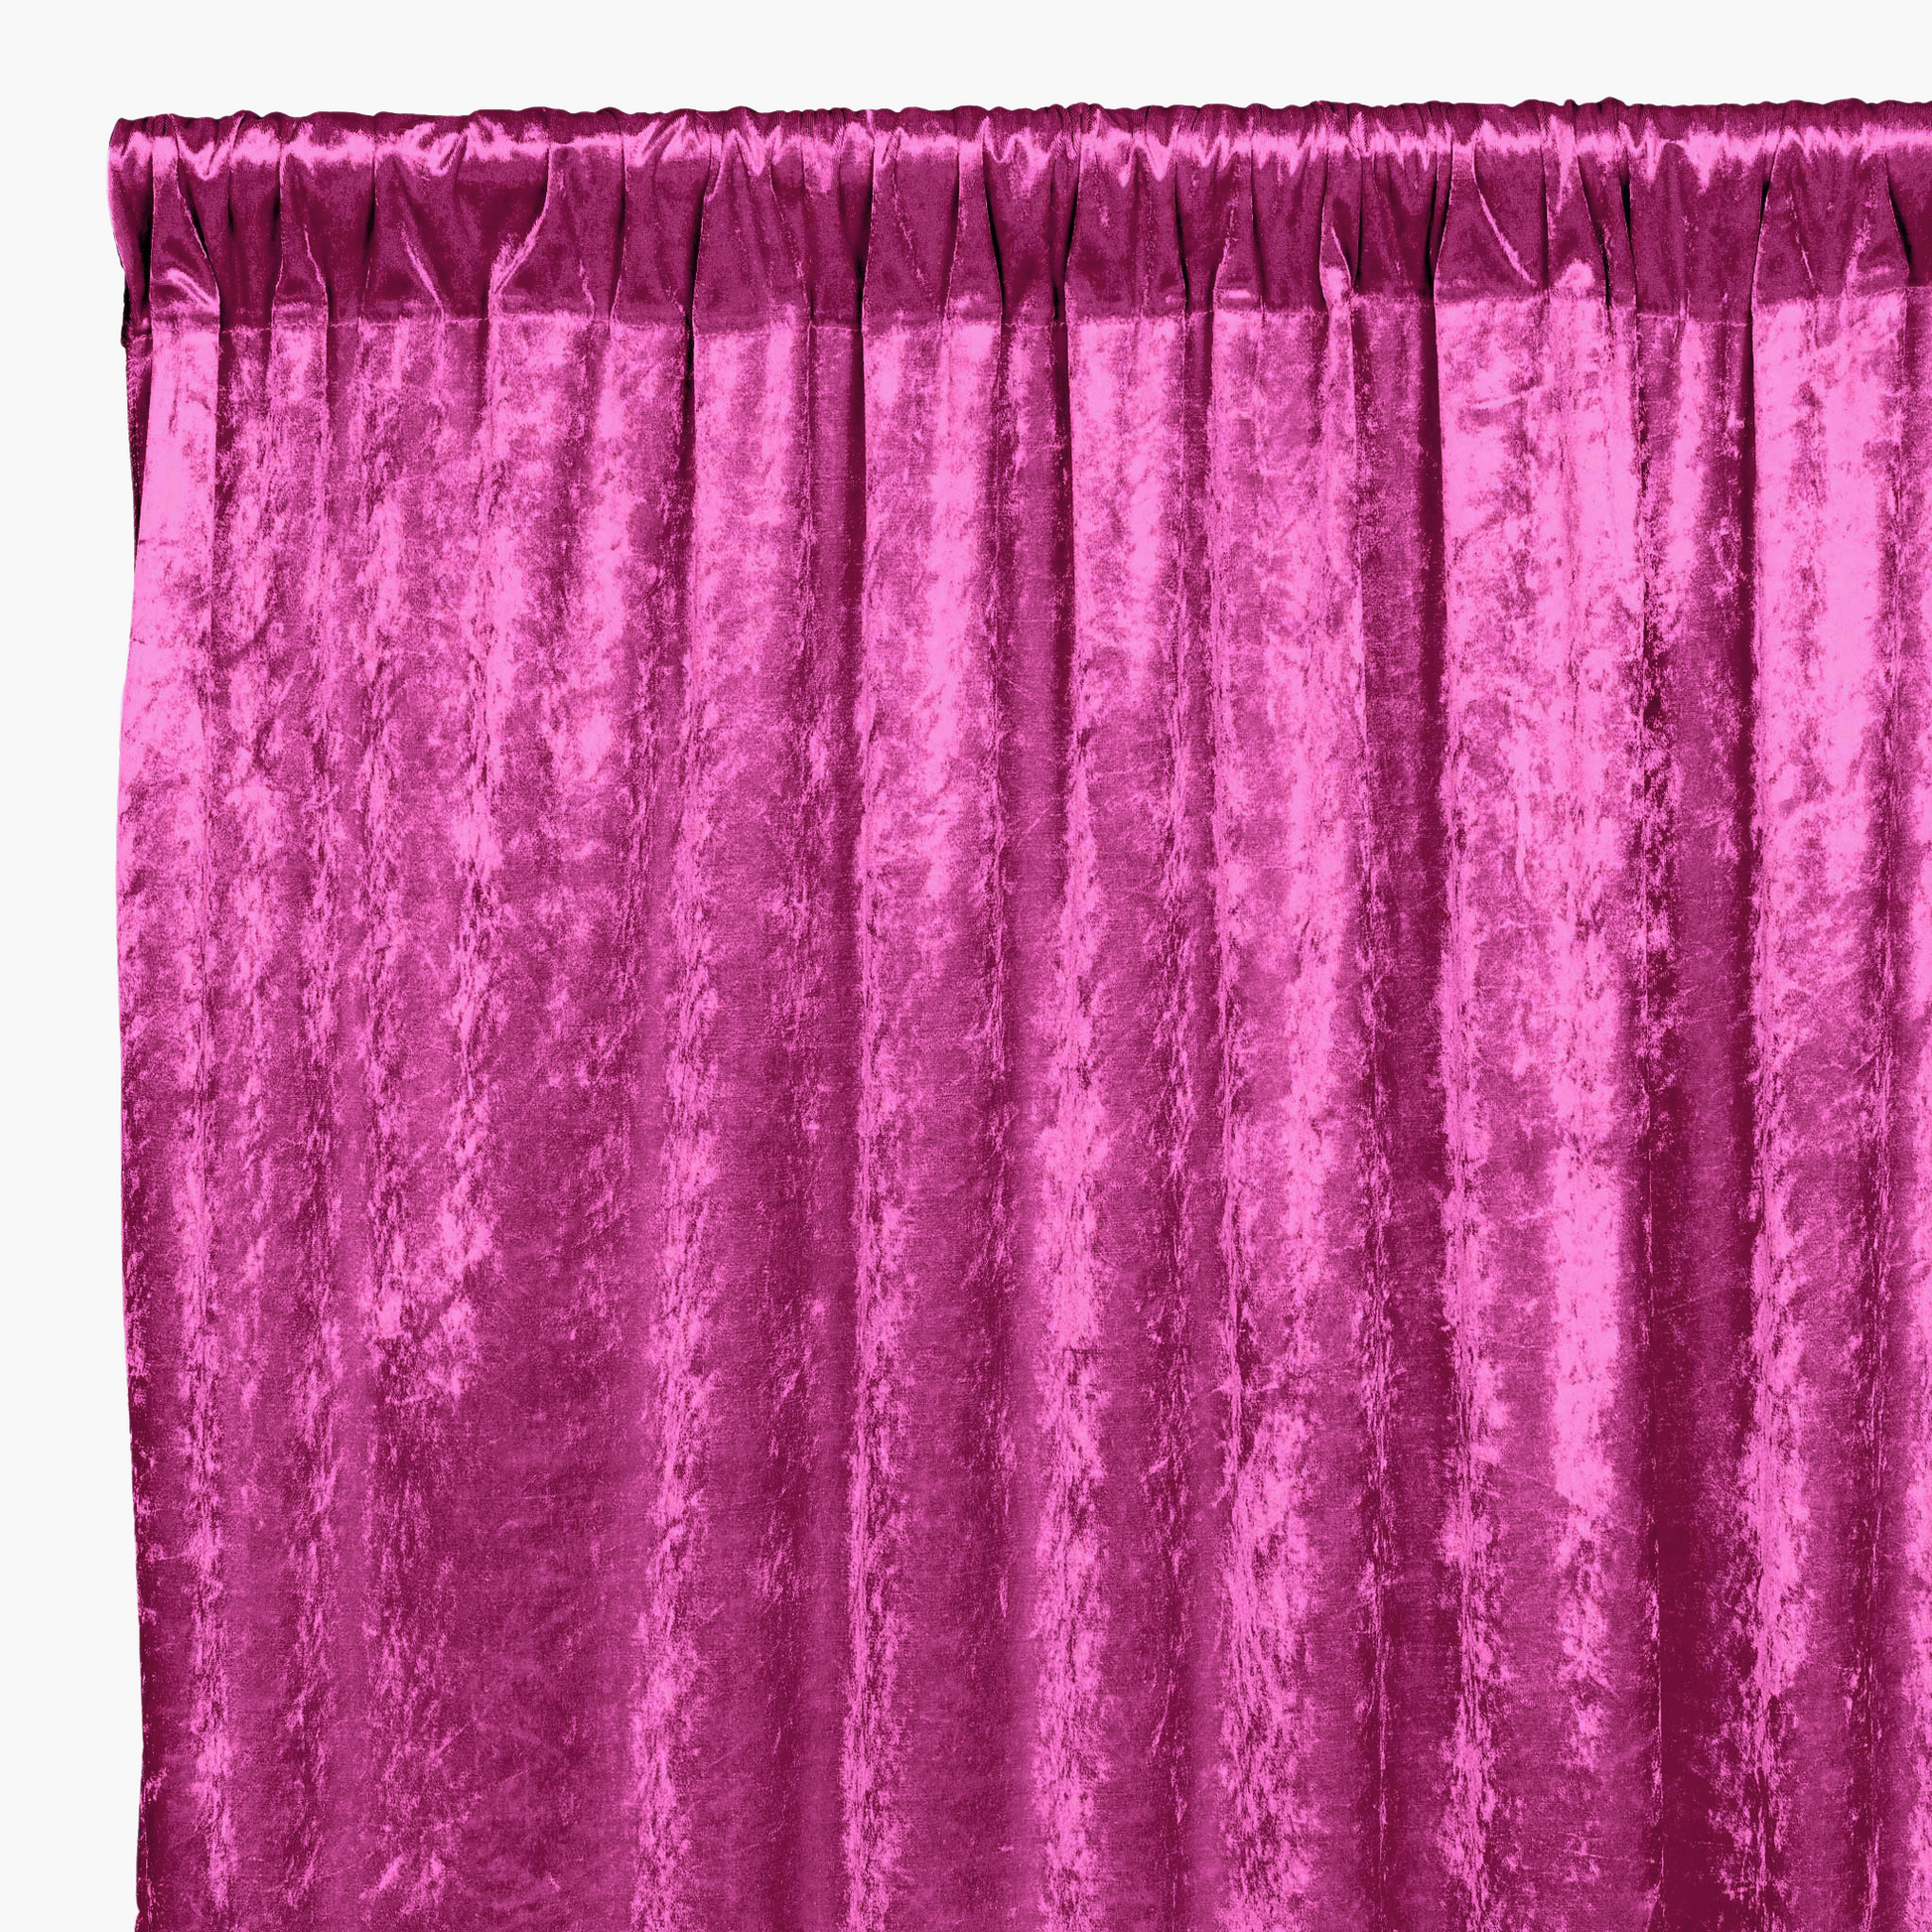 Velvet 12ft H x 52" W Drape/Backdrop Curtain Panel - Magenta